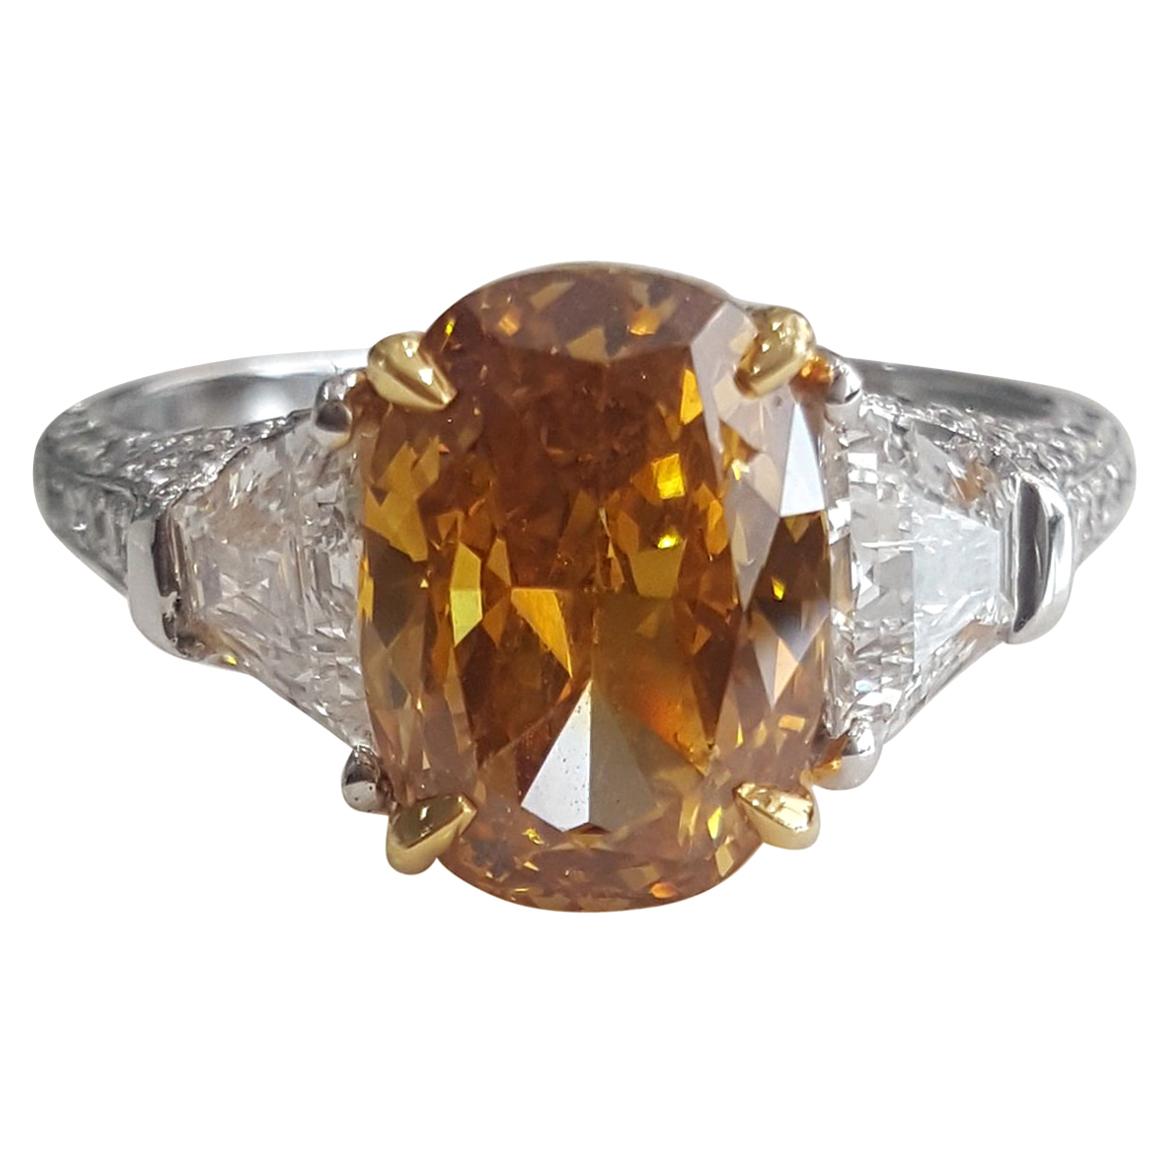 Bague en diamant blanc et ovale de 4,43 carats de couleur naturelle jaune orange foncé fantaisie, certifié GIA. 